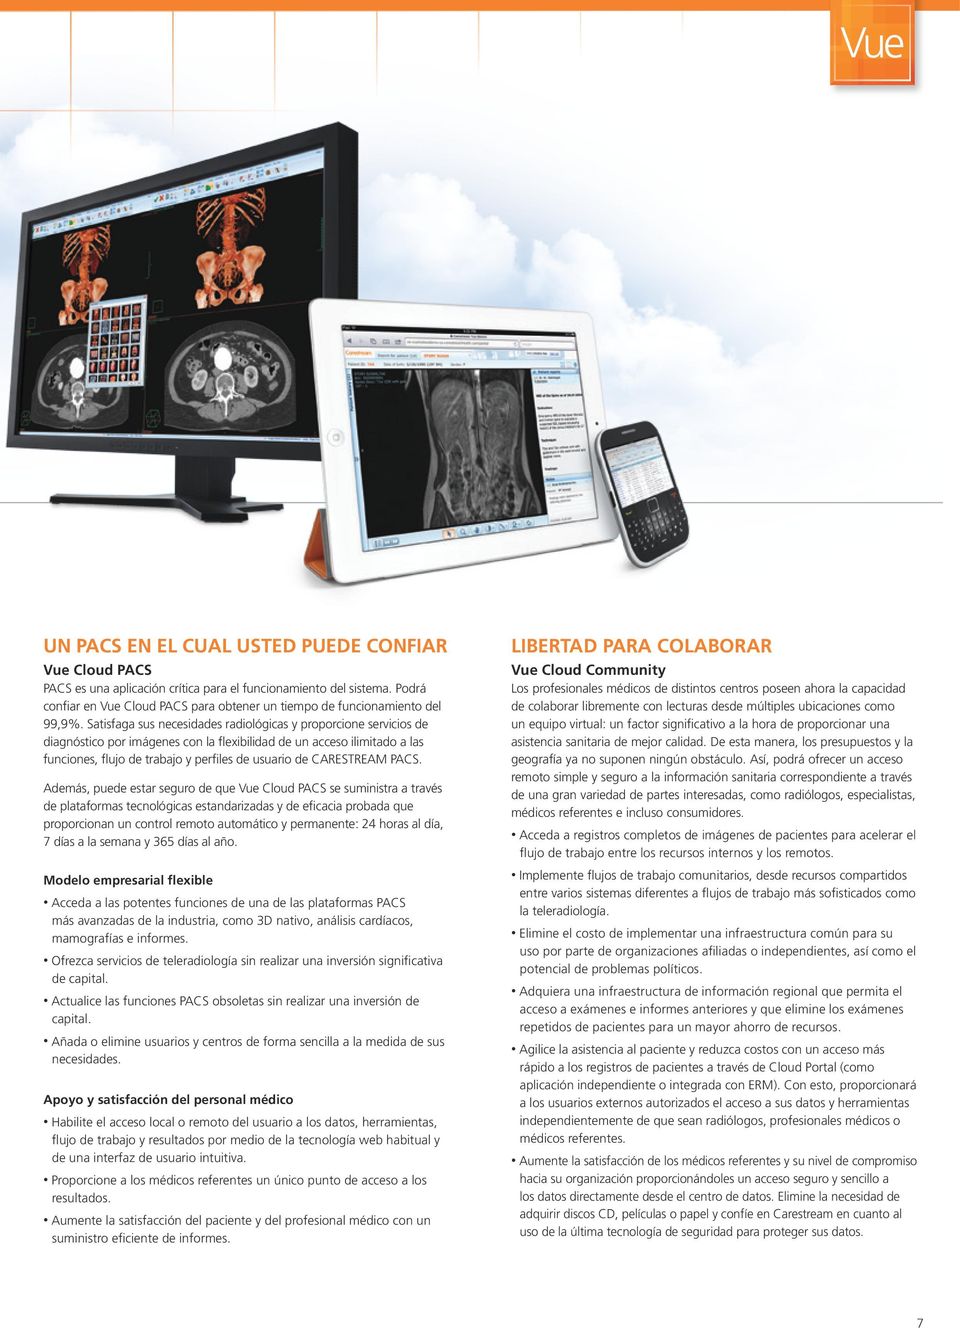 Satisfaga sus necesidades radiológicas y proporcione servicios de diagnóstico por imágenes con la flexibilidad de un acceso ilimitado a las funciones, flujo de trabajo y perfiles de usuario de